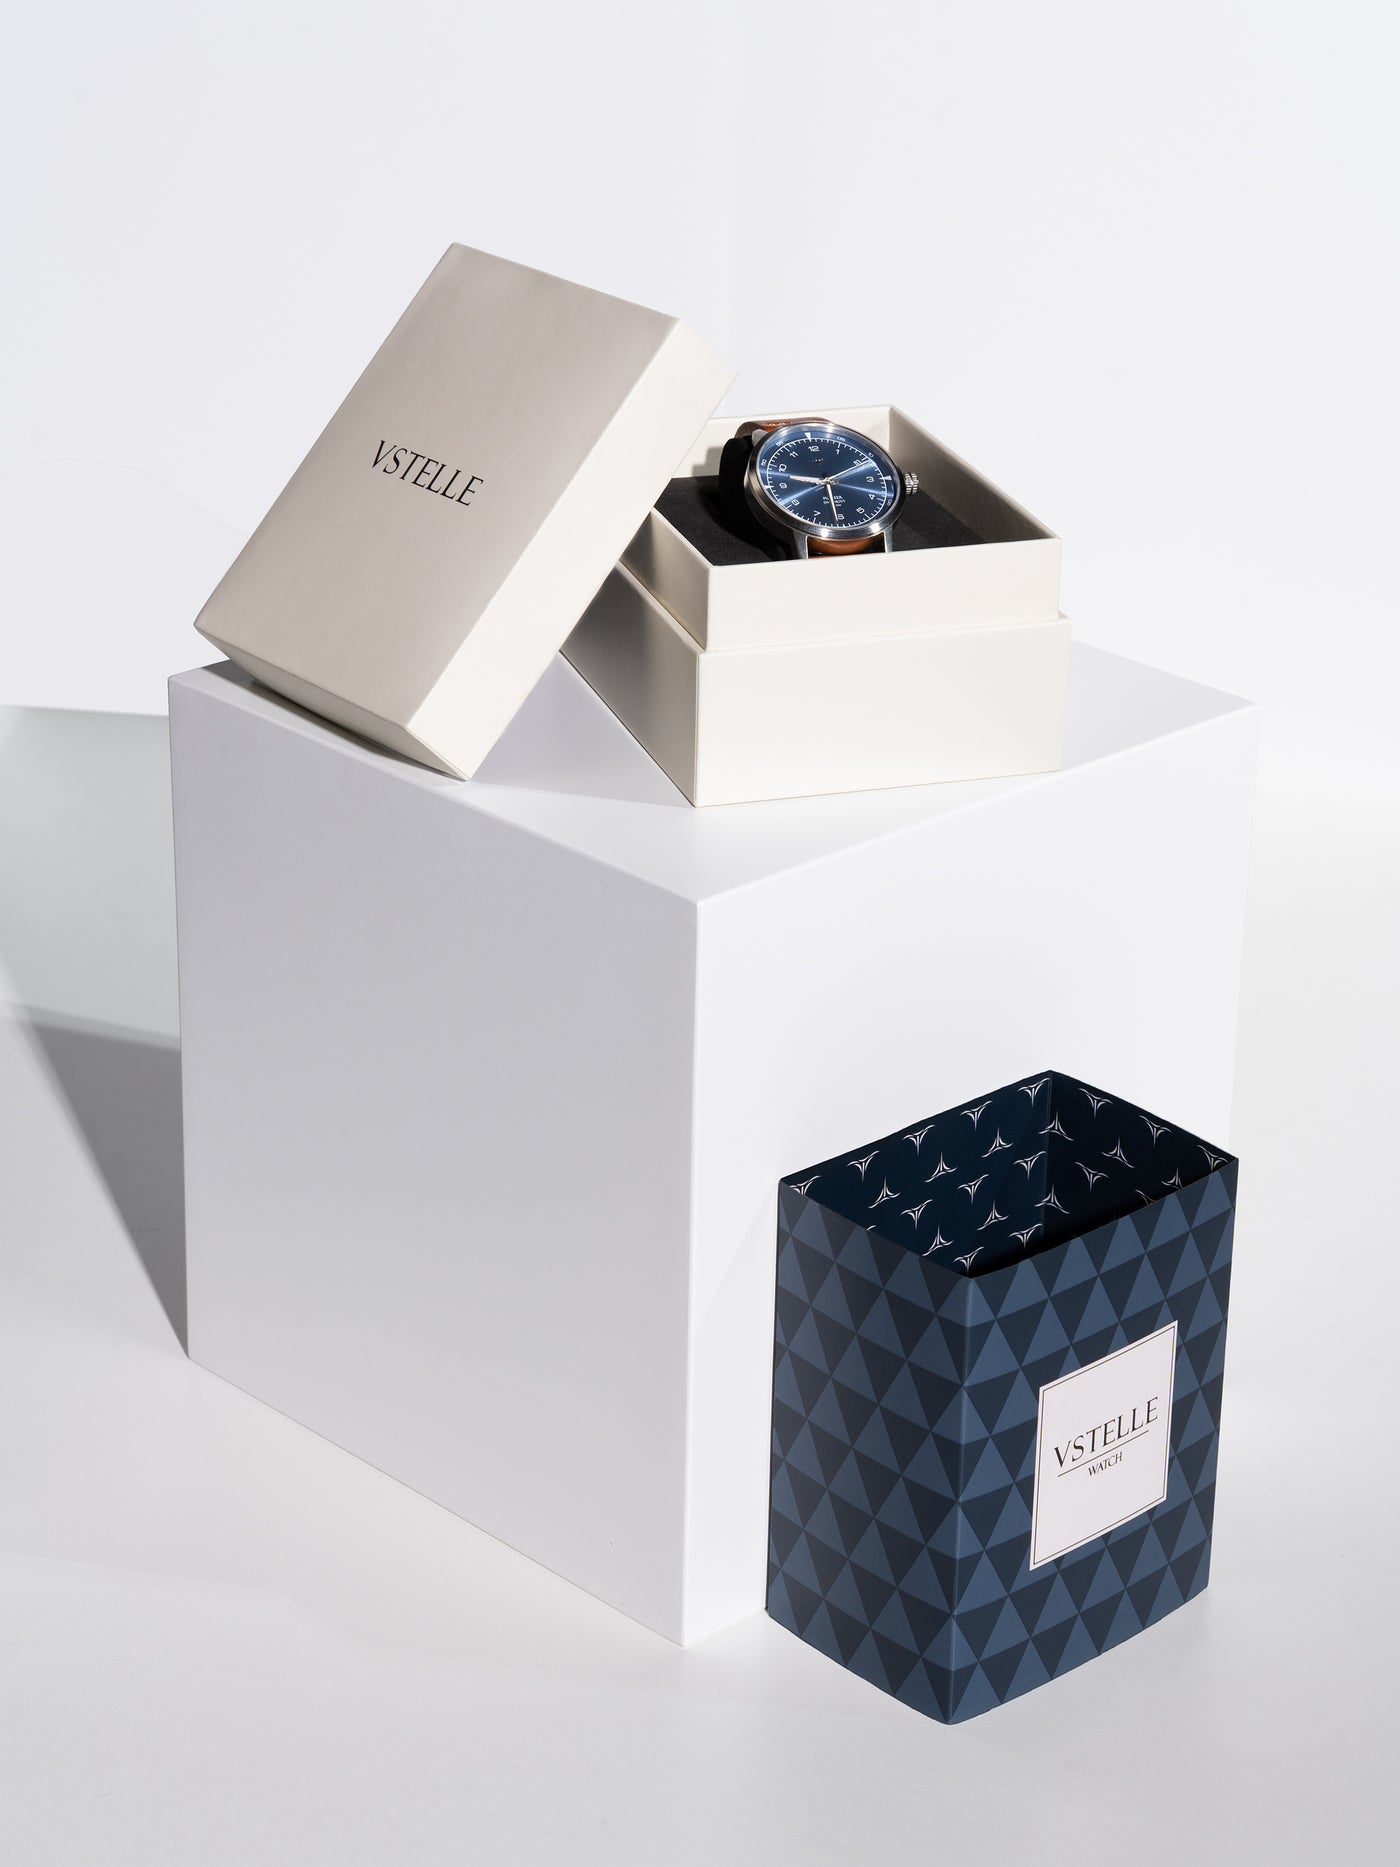 Watch box packaging | Vstelle Watch